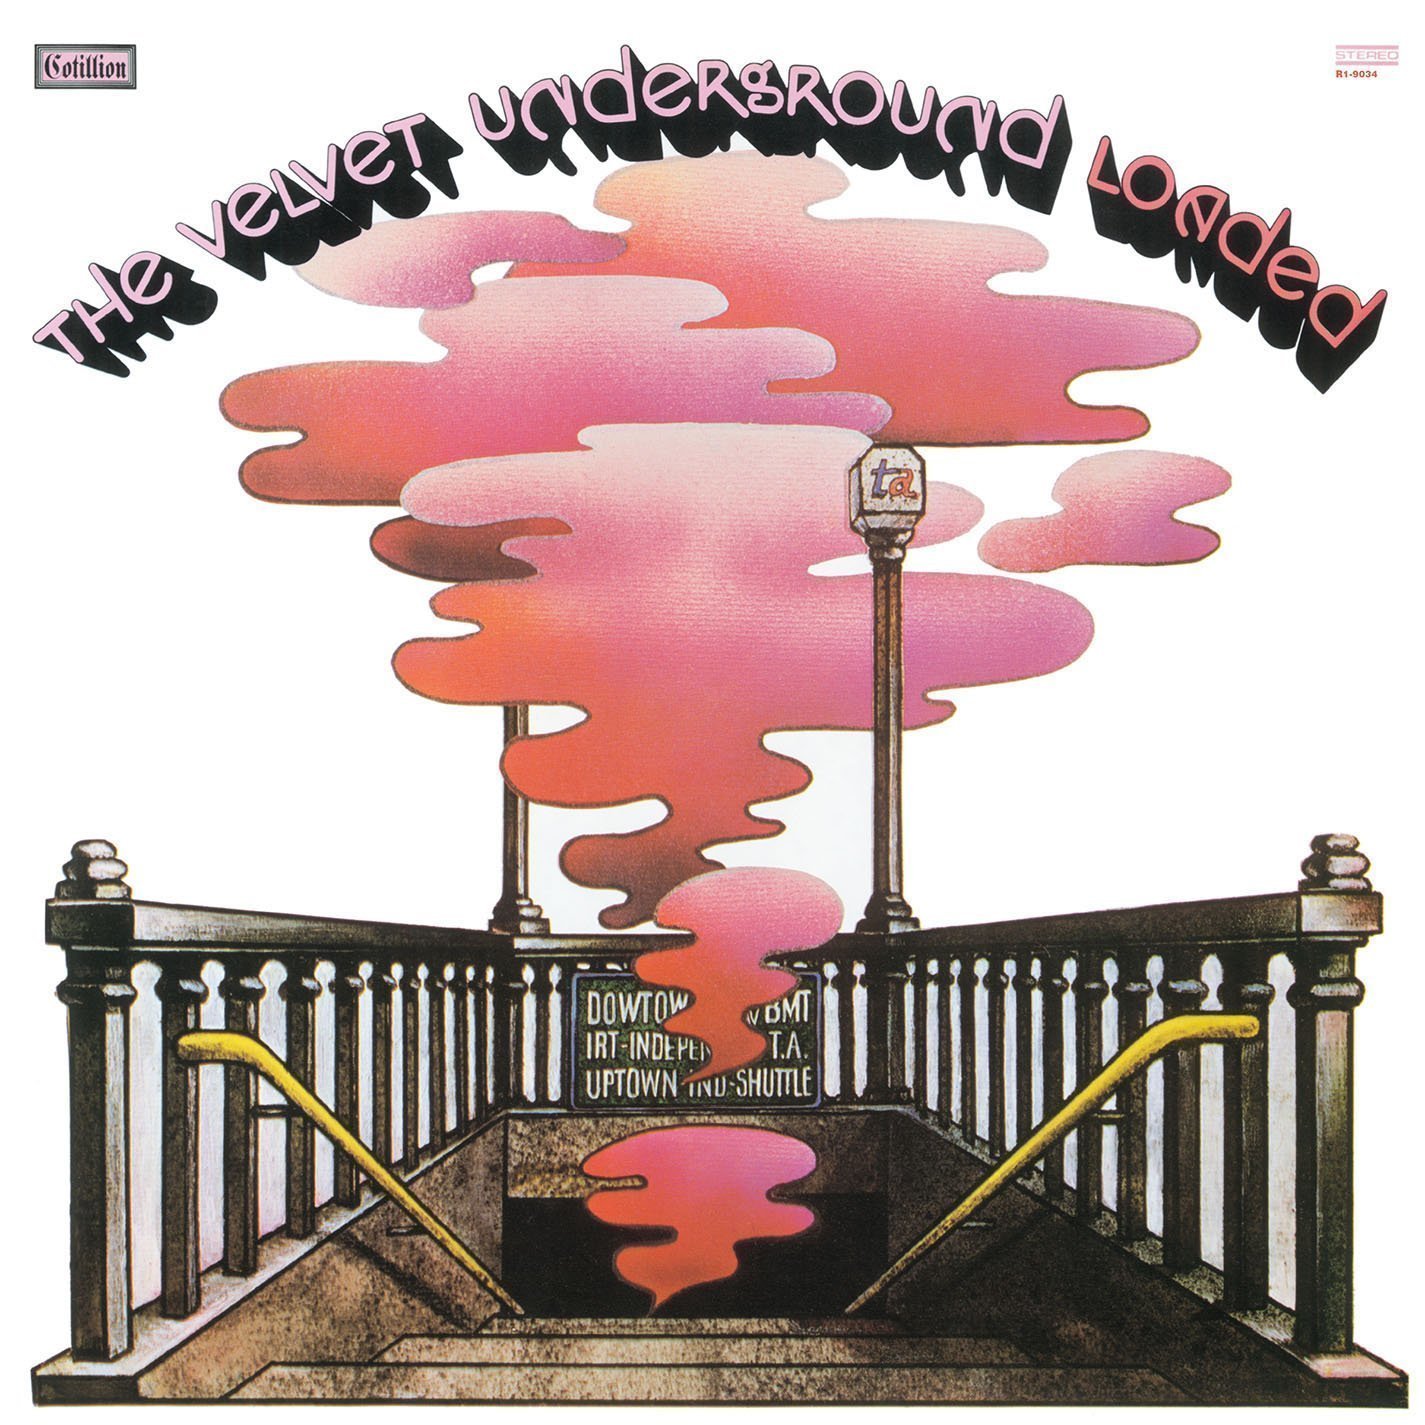 The Velvet Underground - Loaded (LP) The Velvet Underground